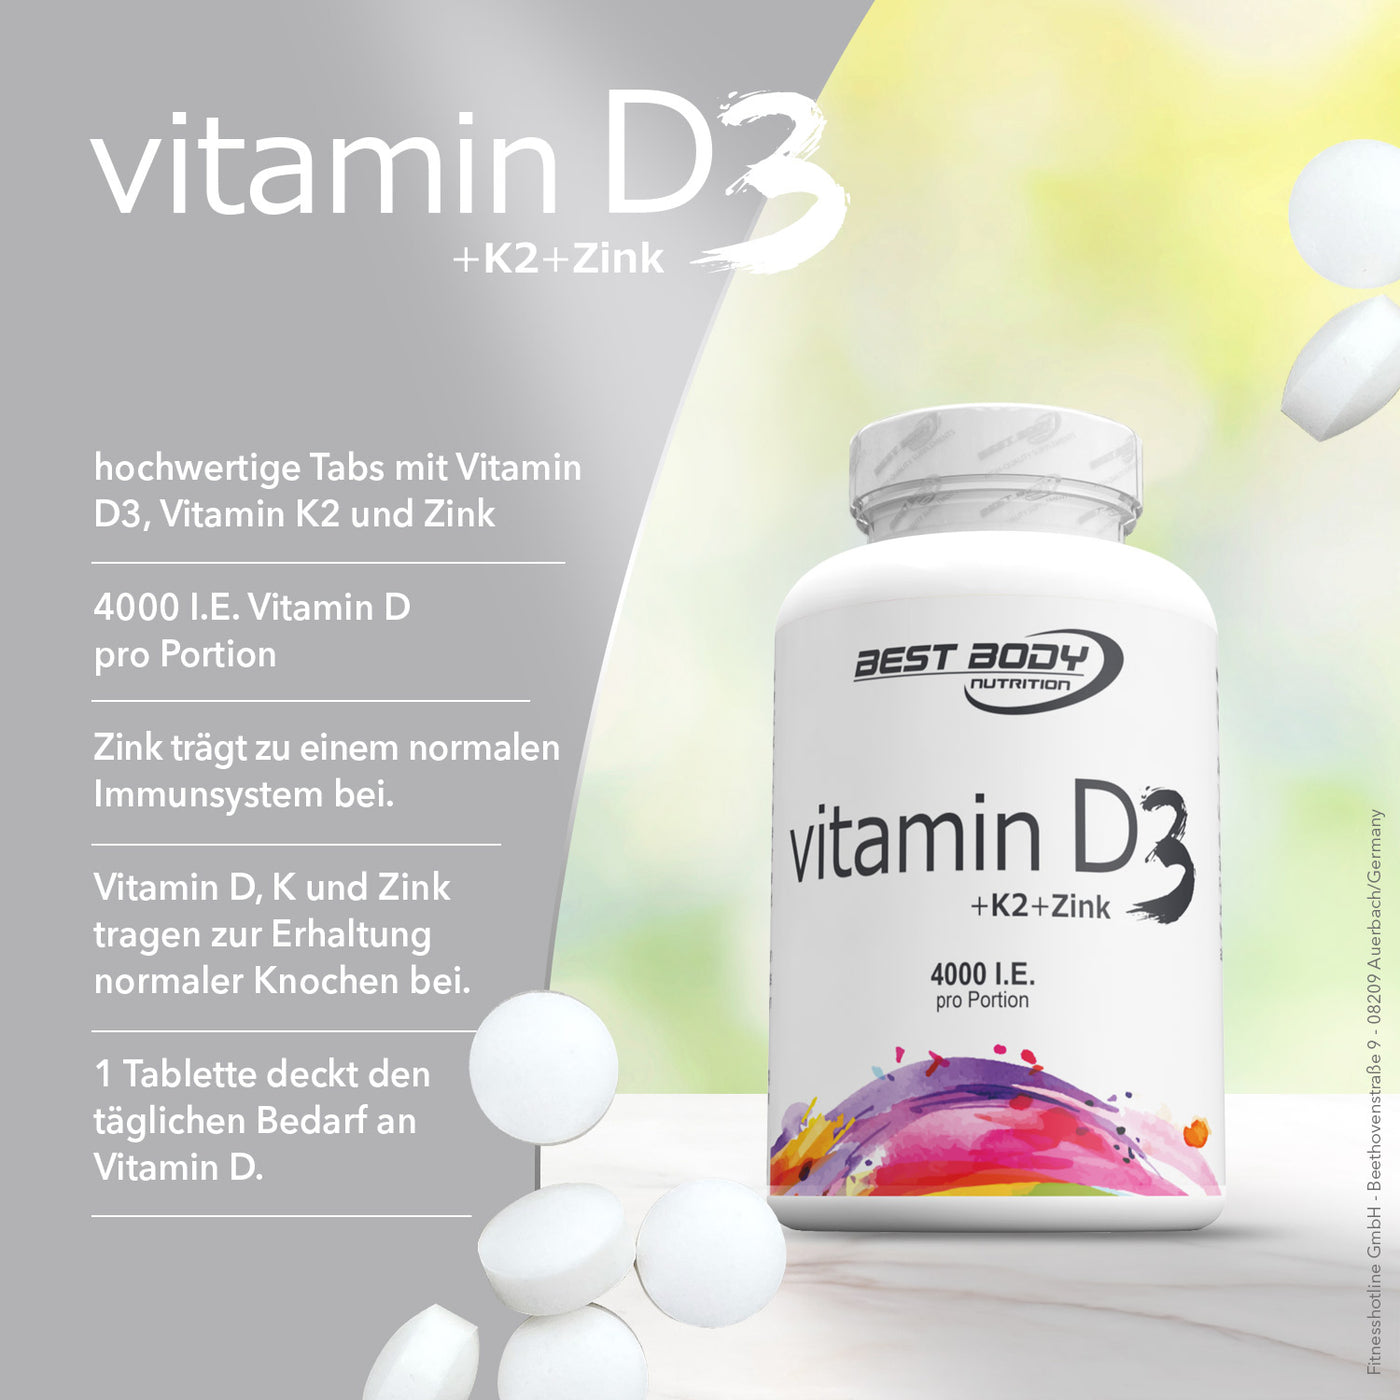 Vitamin D3 + K2 + Zink Tabs - 80 Stück/Dose